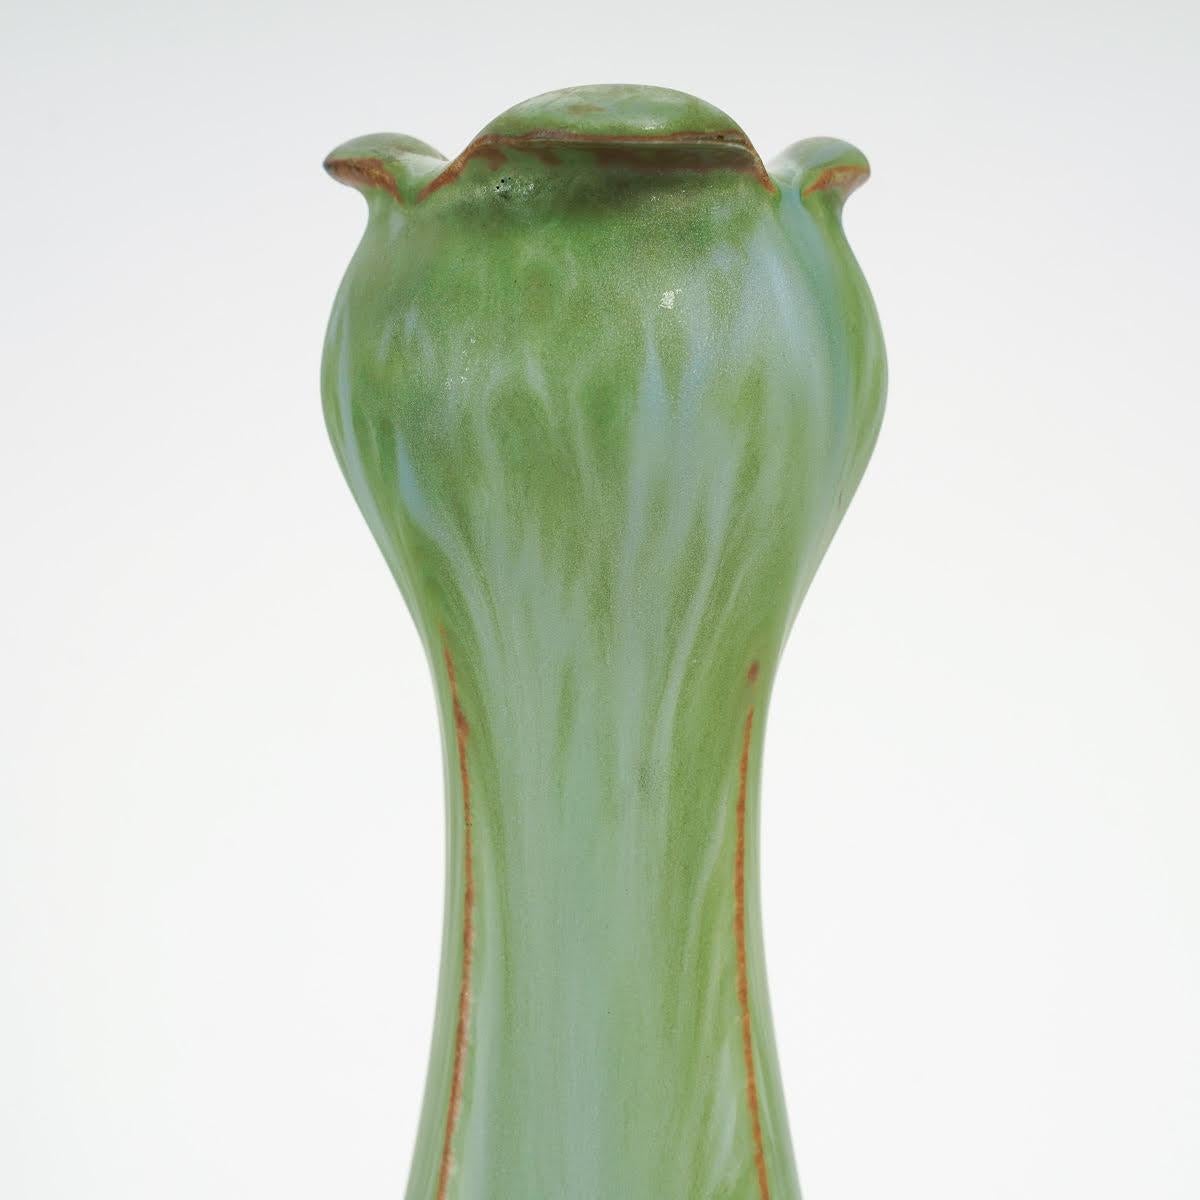 Stoneware and gilt bronze Art Nouveau vase by Paul Louchet .

Early 20th century Art Nouveau stoneware and gilt bronze vase by Paul Louchet.

Dimensions: h: 36cm, d: 13.5cm